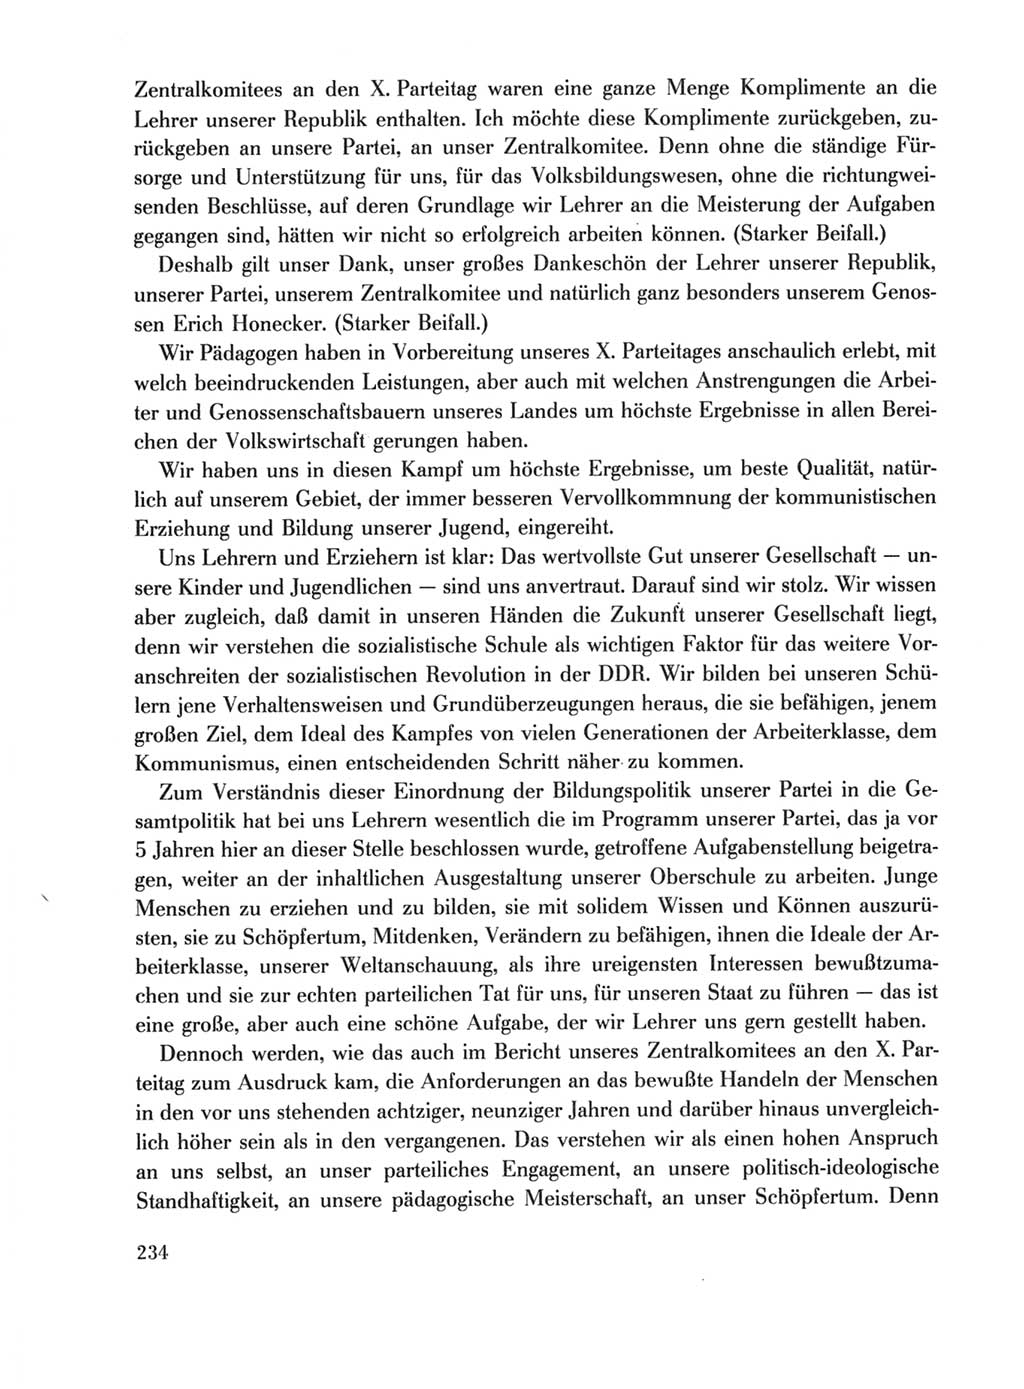 Protokoll der Verhandlungen des Ⅹ. Parteitages der Sozialistischen Einheitspartei Deutschlands (SED) [Deutsche Demokratische Republik (DDR)] 1981, Band 1, Seite 234 (Prot. Verh. Ⅹ. PT SED DDR 1981, Bd. 1, S. 234)